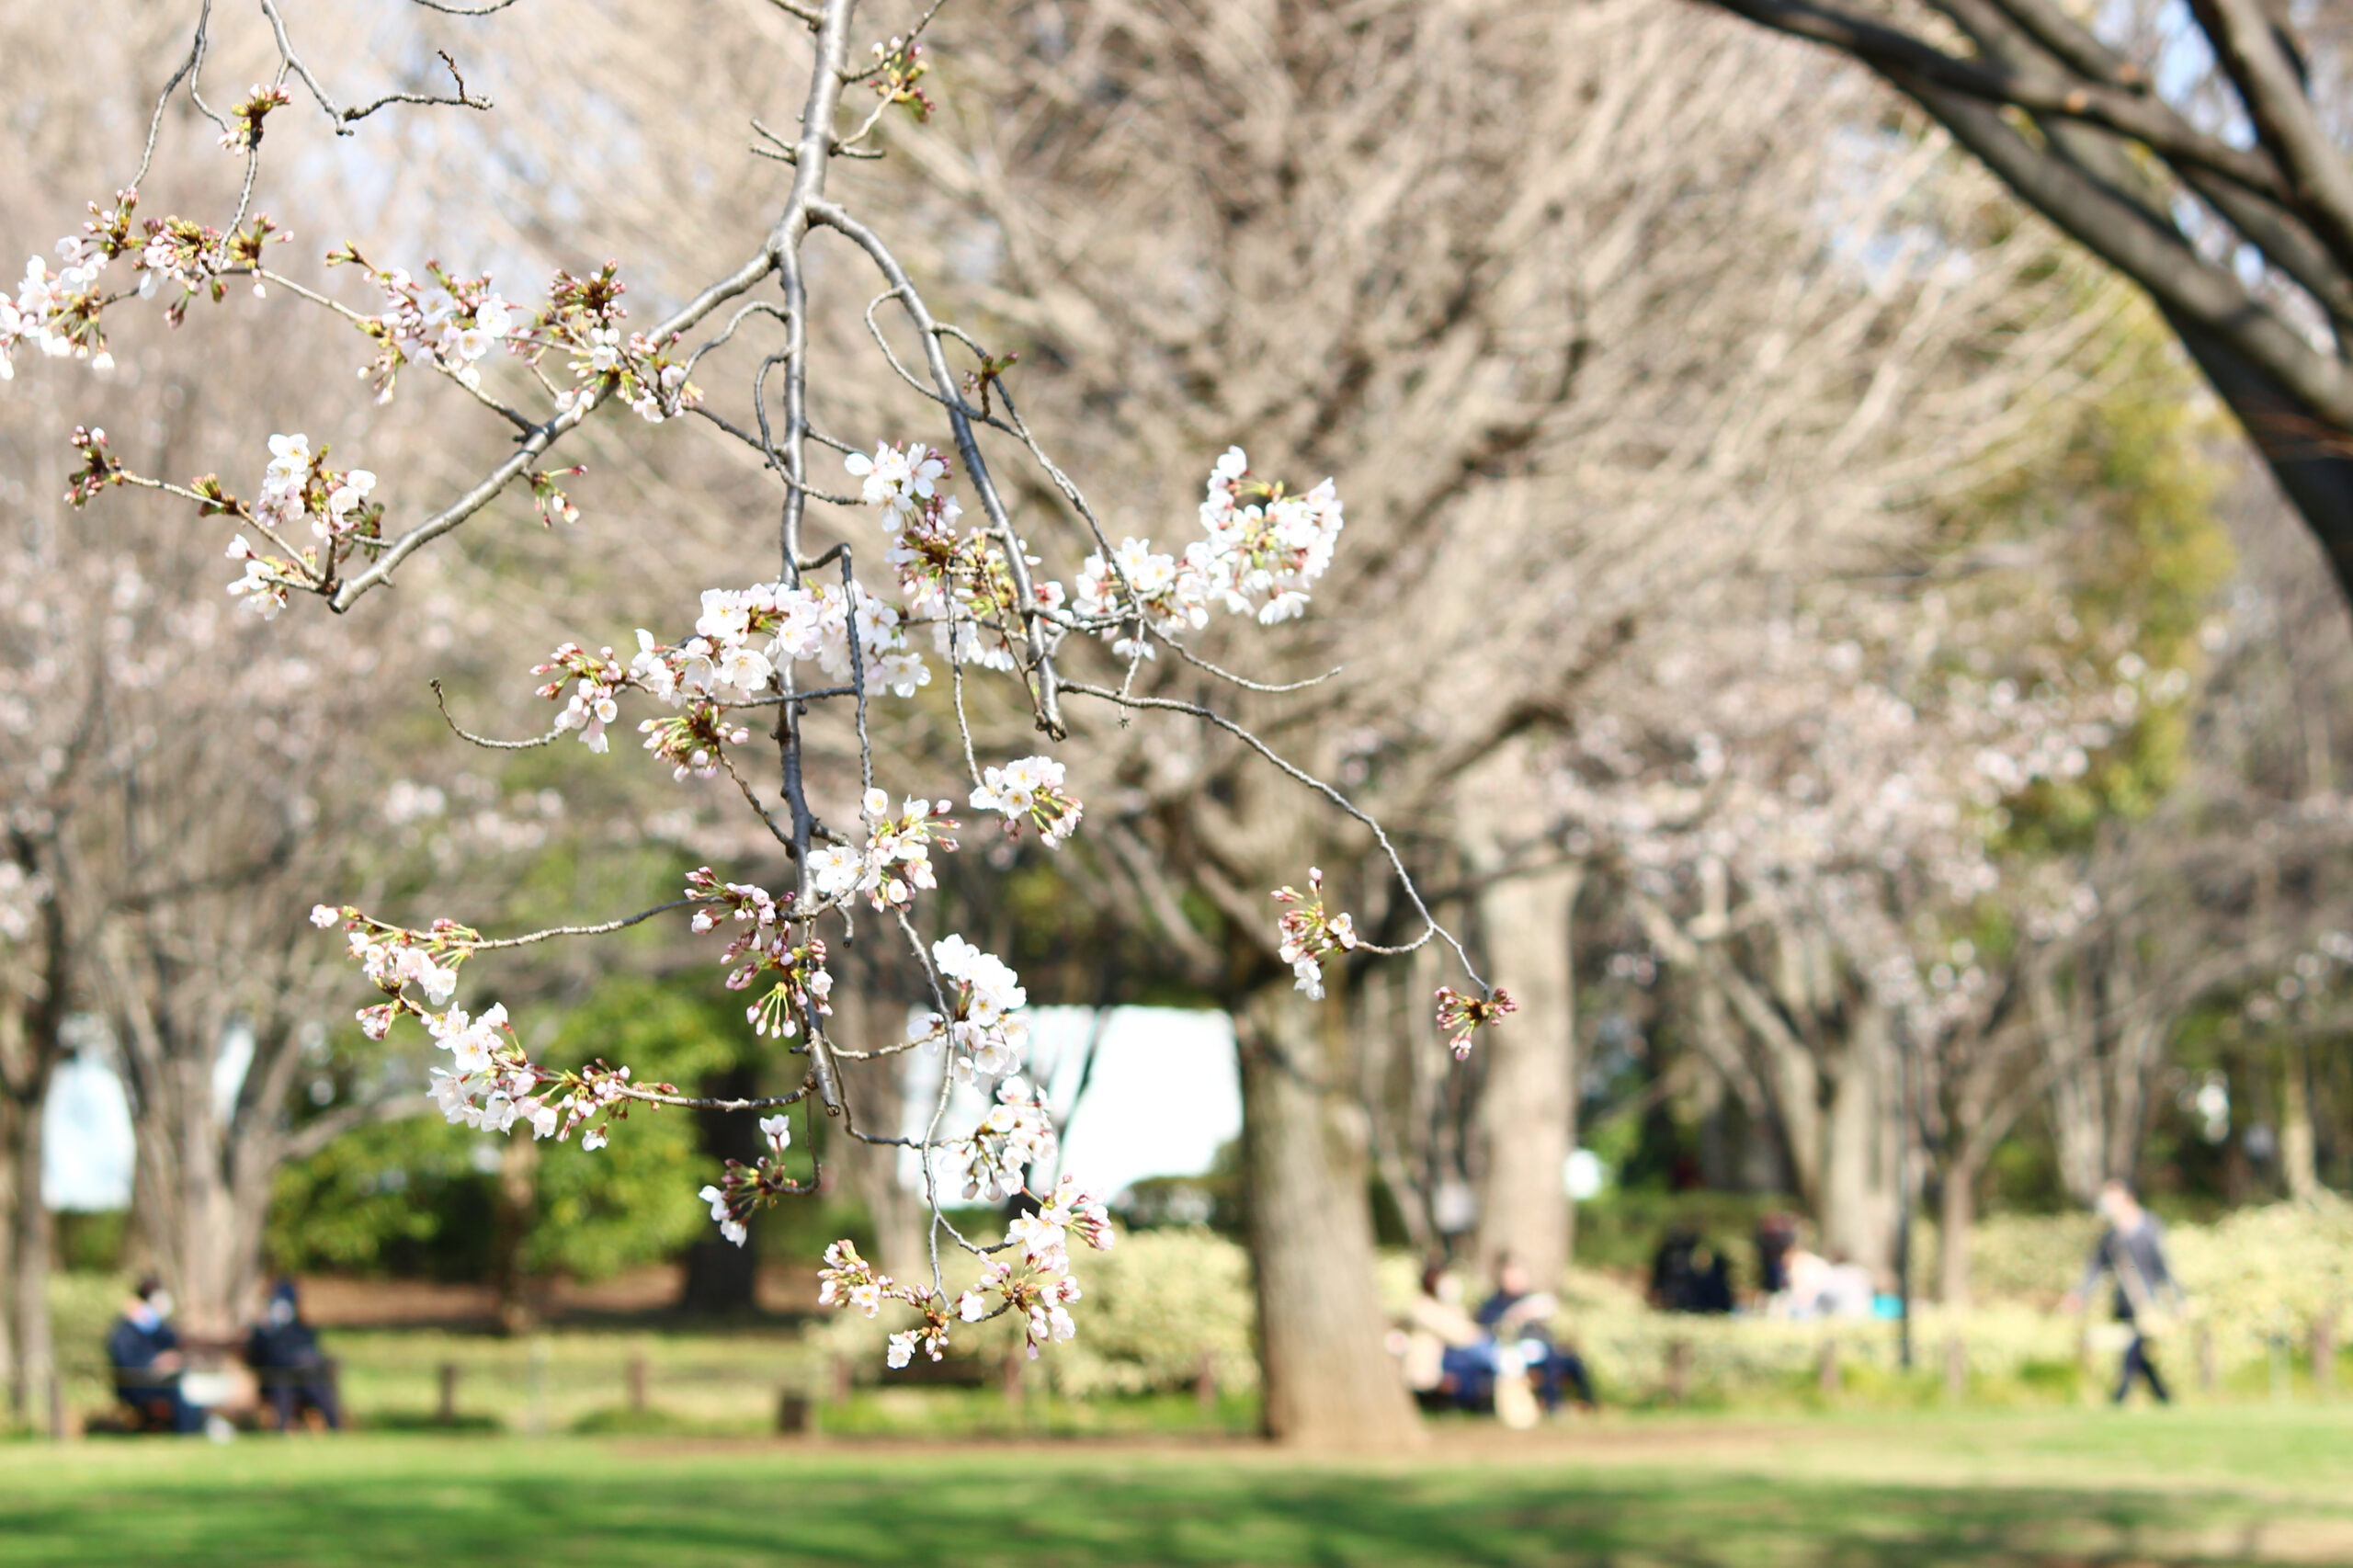 北の丸公園の桜が満開 武道館 田安門に映える桜を速報レポート オマツリジャパン 毎日 祭日